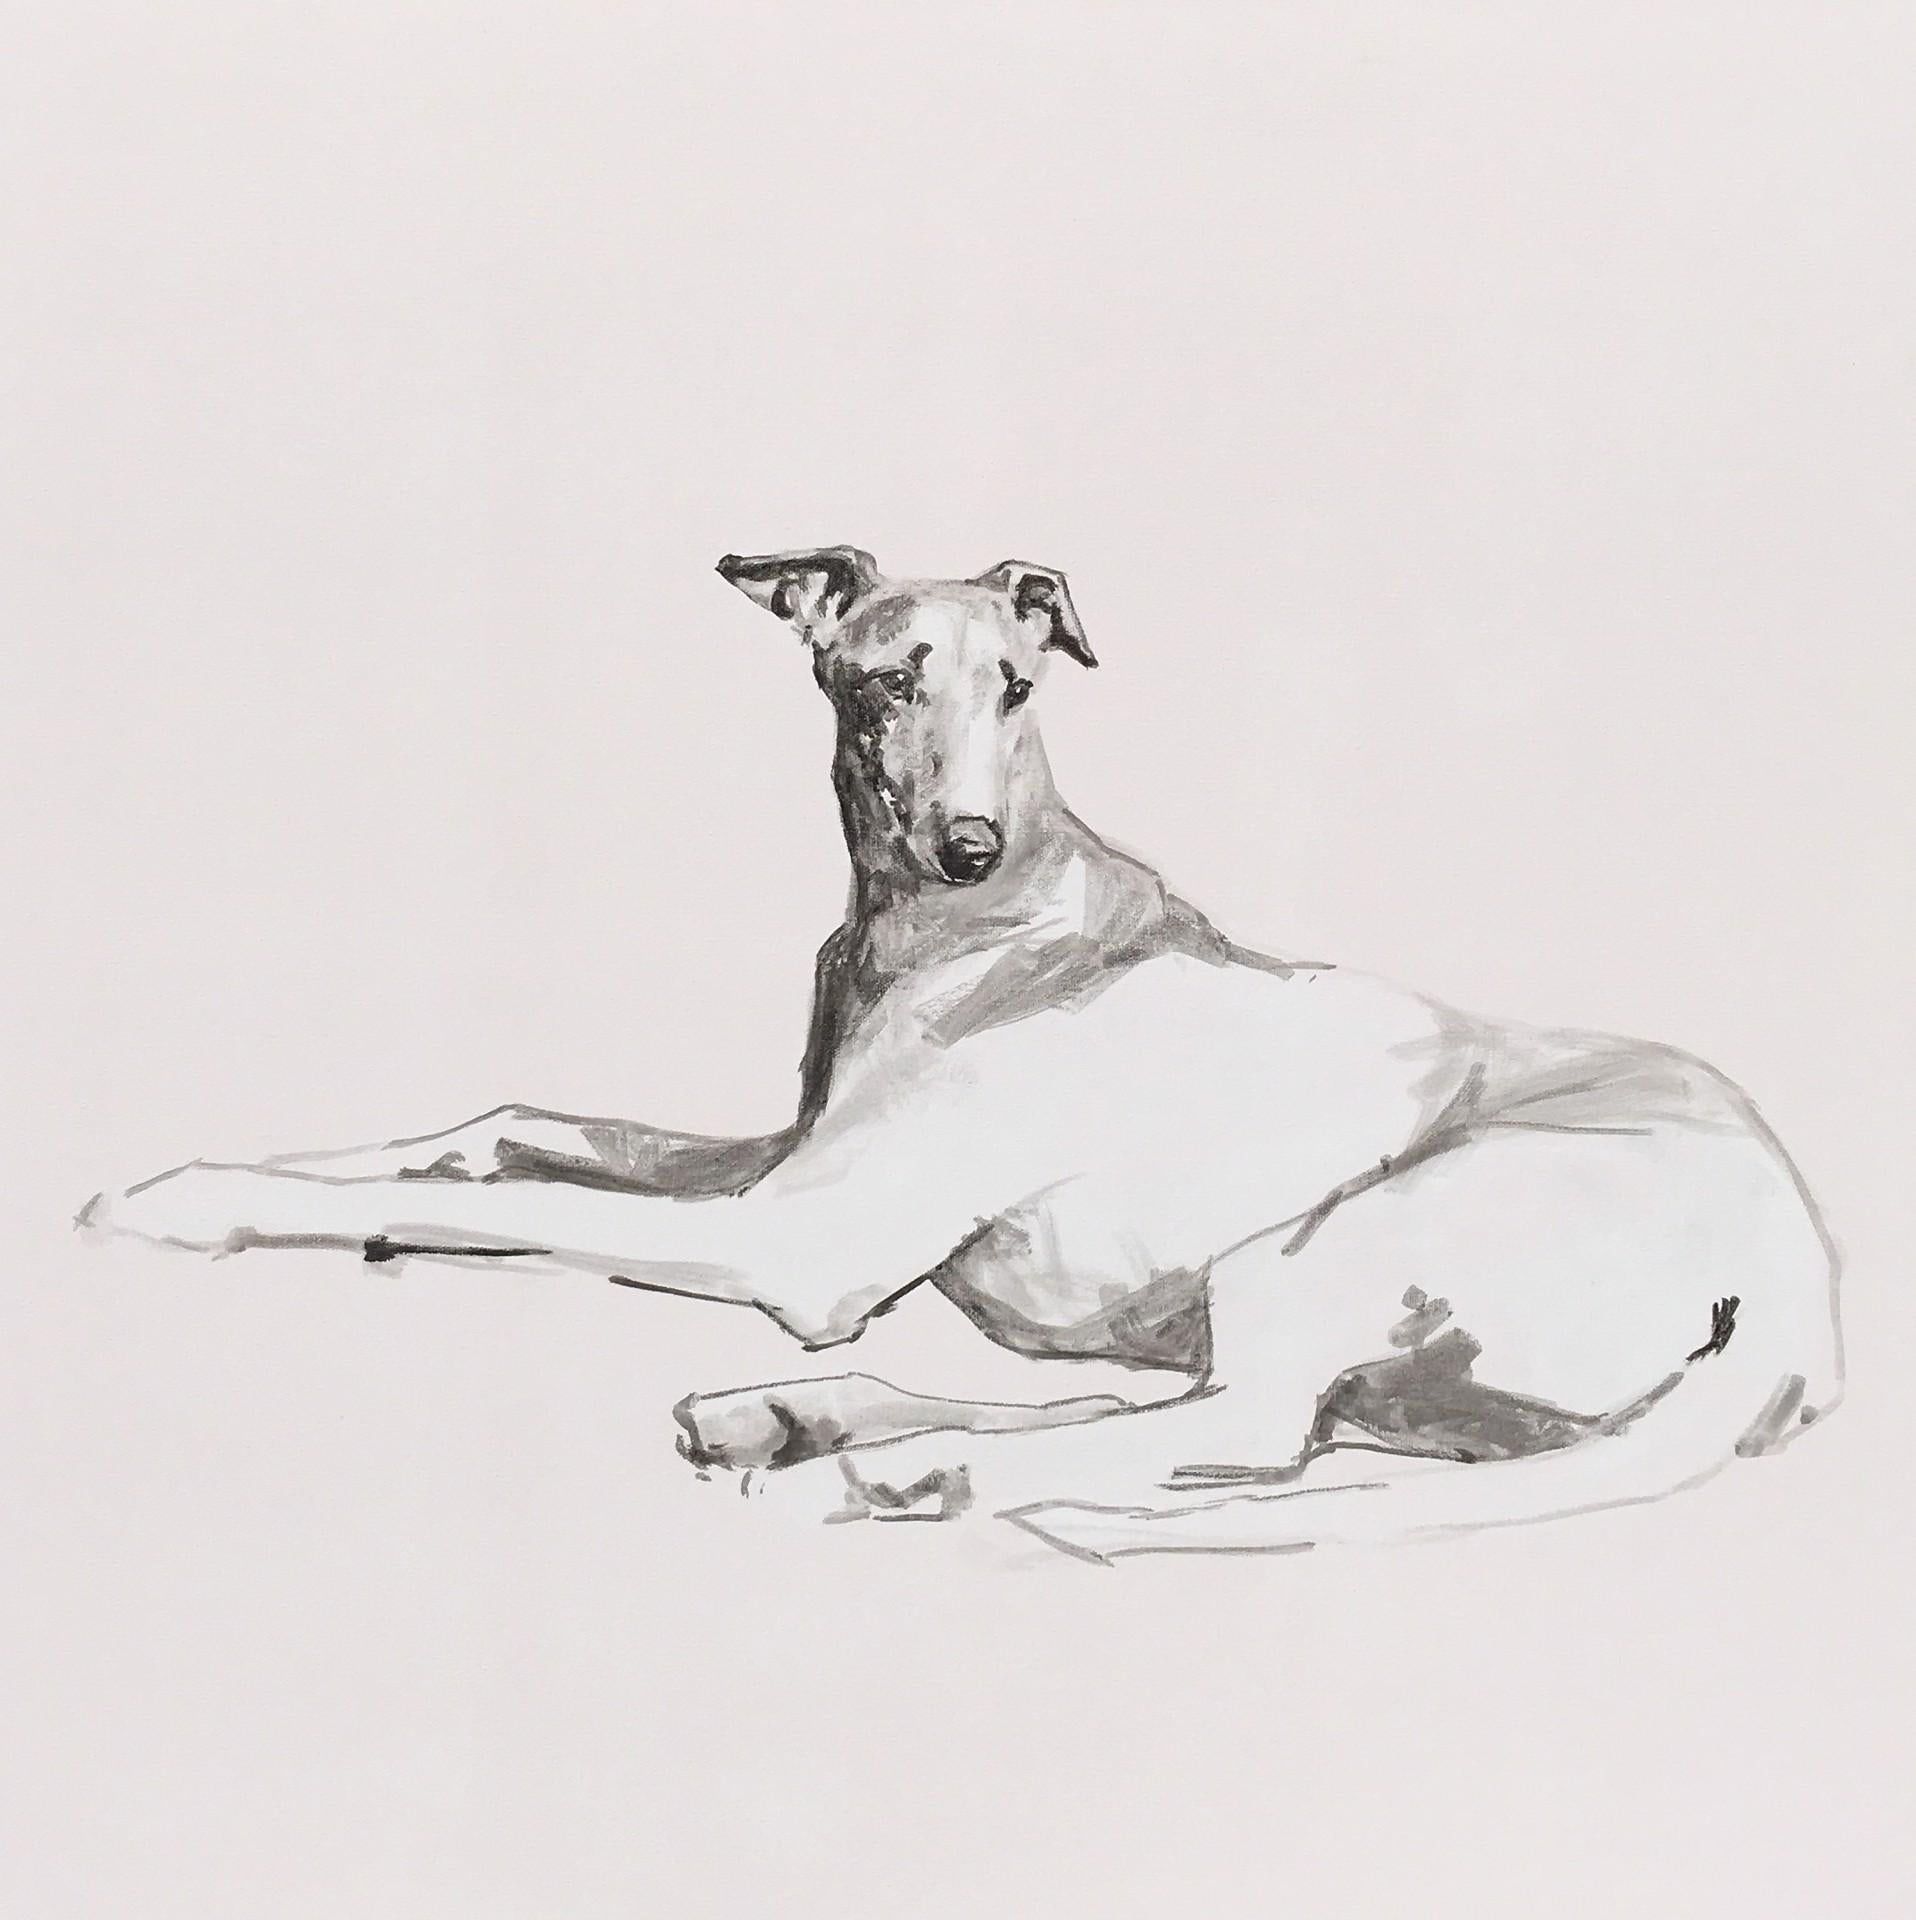 Greyhound, Dieses atemberaubende, große, minimalistische Schwarz-Weiß-Gemälde eines Greyhound-Hundes ist ein zeitgenössisches Porträt in  Acryl auf Leinwand.  Ian Masons Hundeporträts sind sehr eindrucksvoll, da er die Form jeder Hunderasse mit